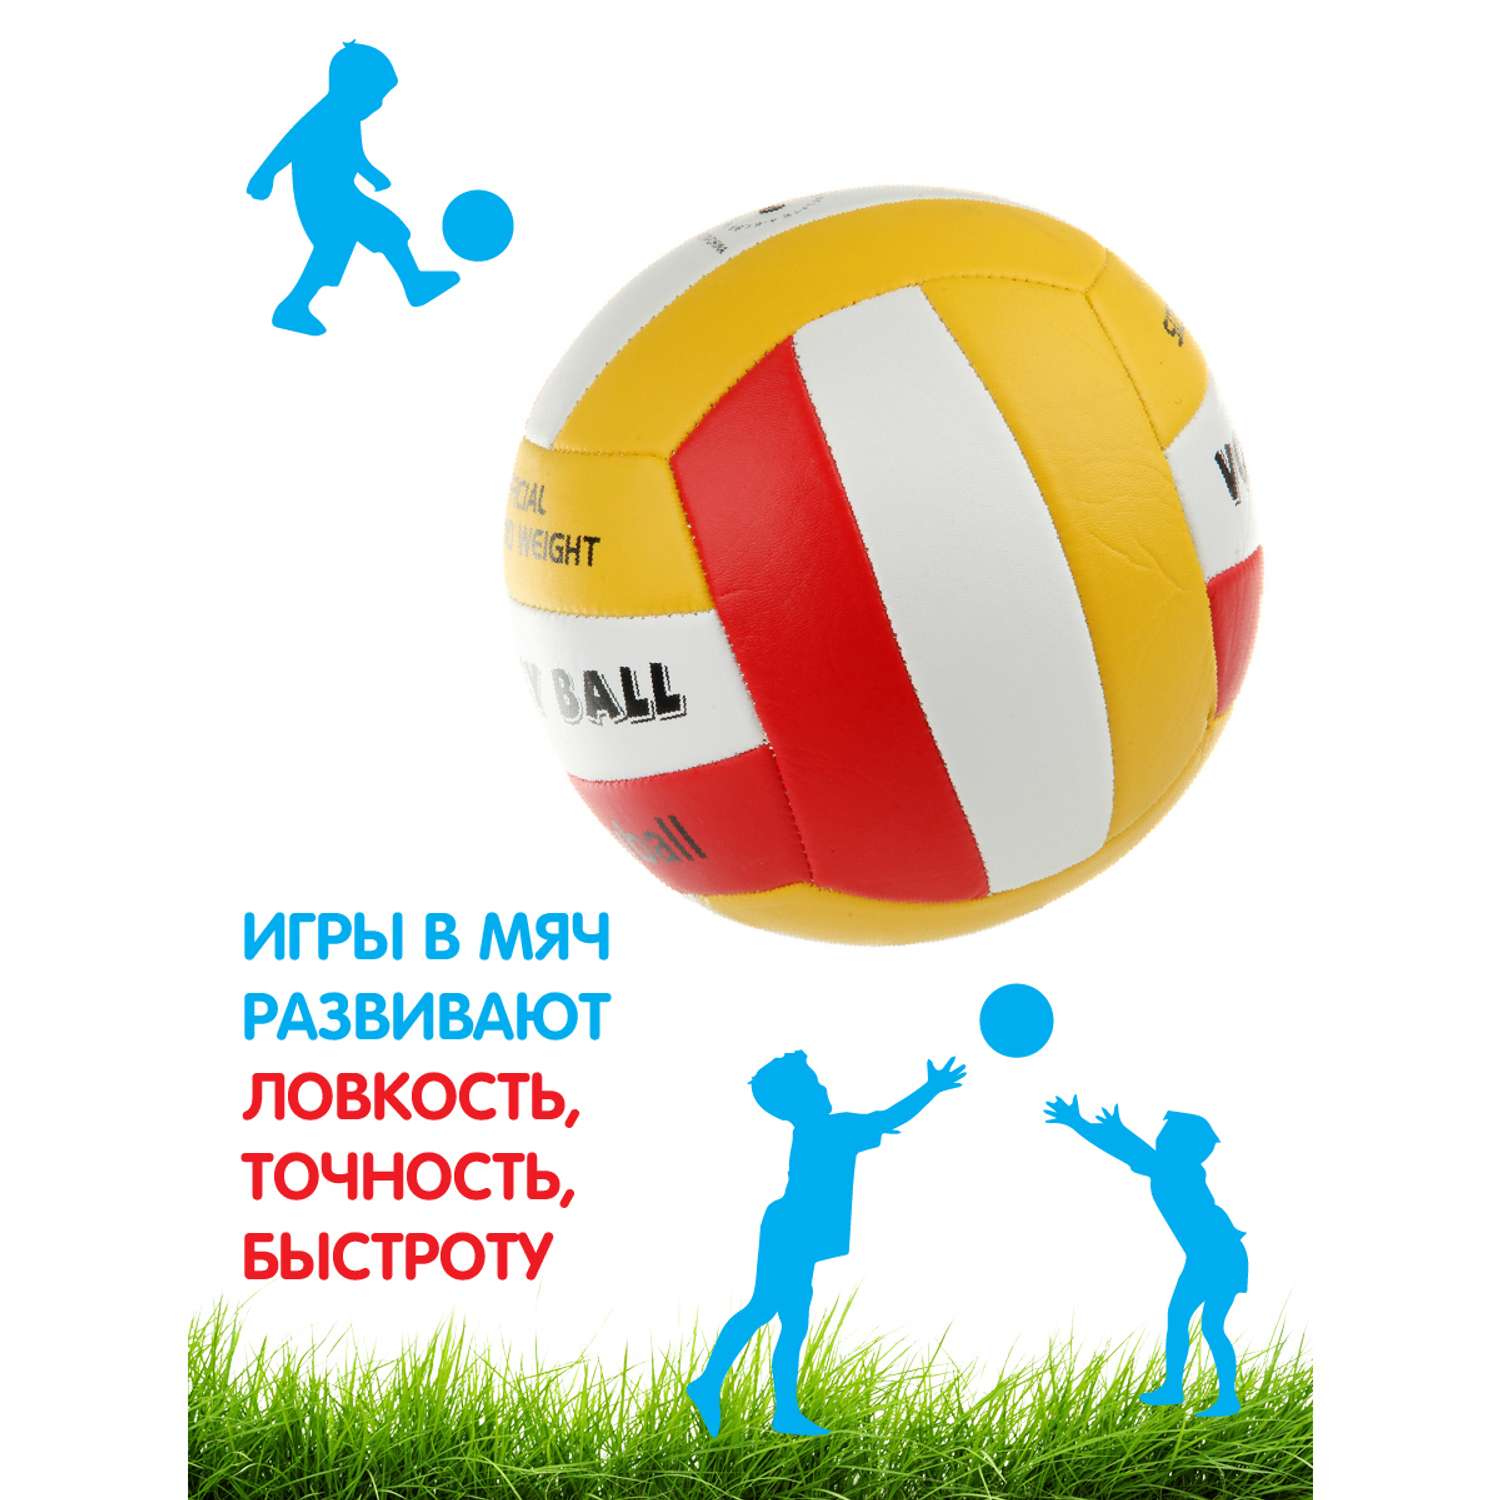 Мяч Veld Co волейбольный 21 см - фото 3